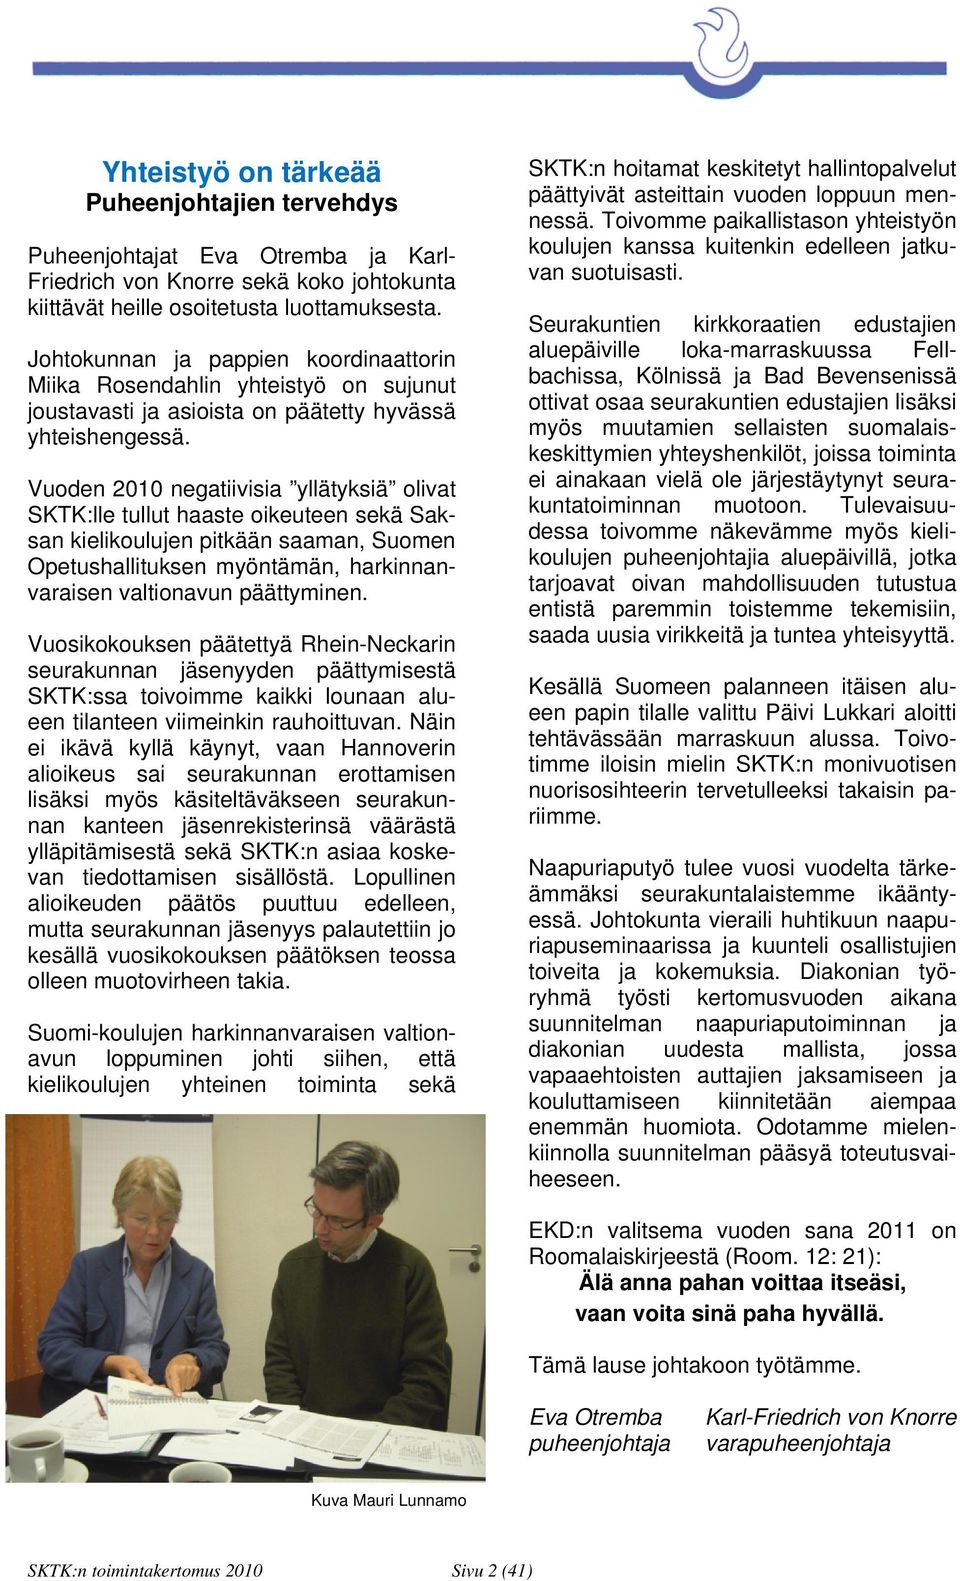 Vuoden 2010 negatiivisia yllätyksiä olivat SKTK:lle tullut haaste oikeuteen sekä Saksan kielikoulujen pitkään saaman, Suomen Opetushallituksen myöntämän, harkinnanvaraisen valtionavun päättyminen.